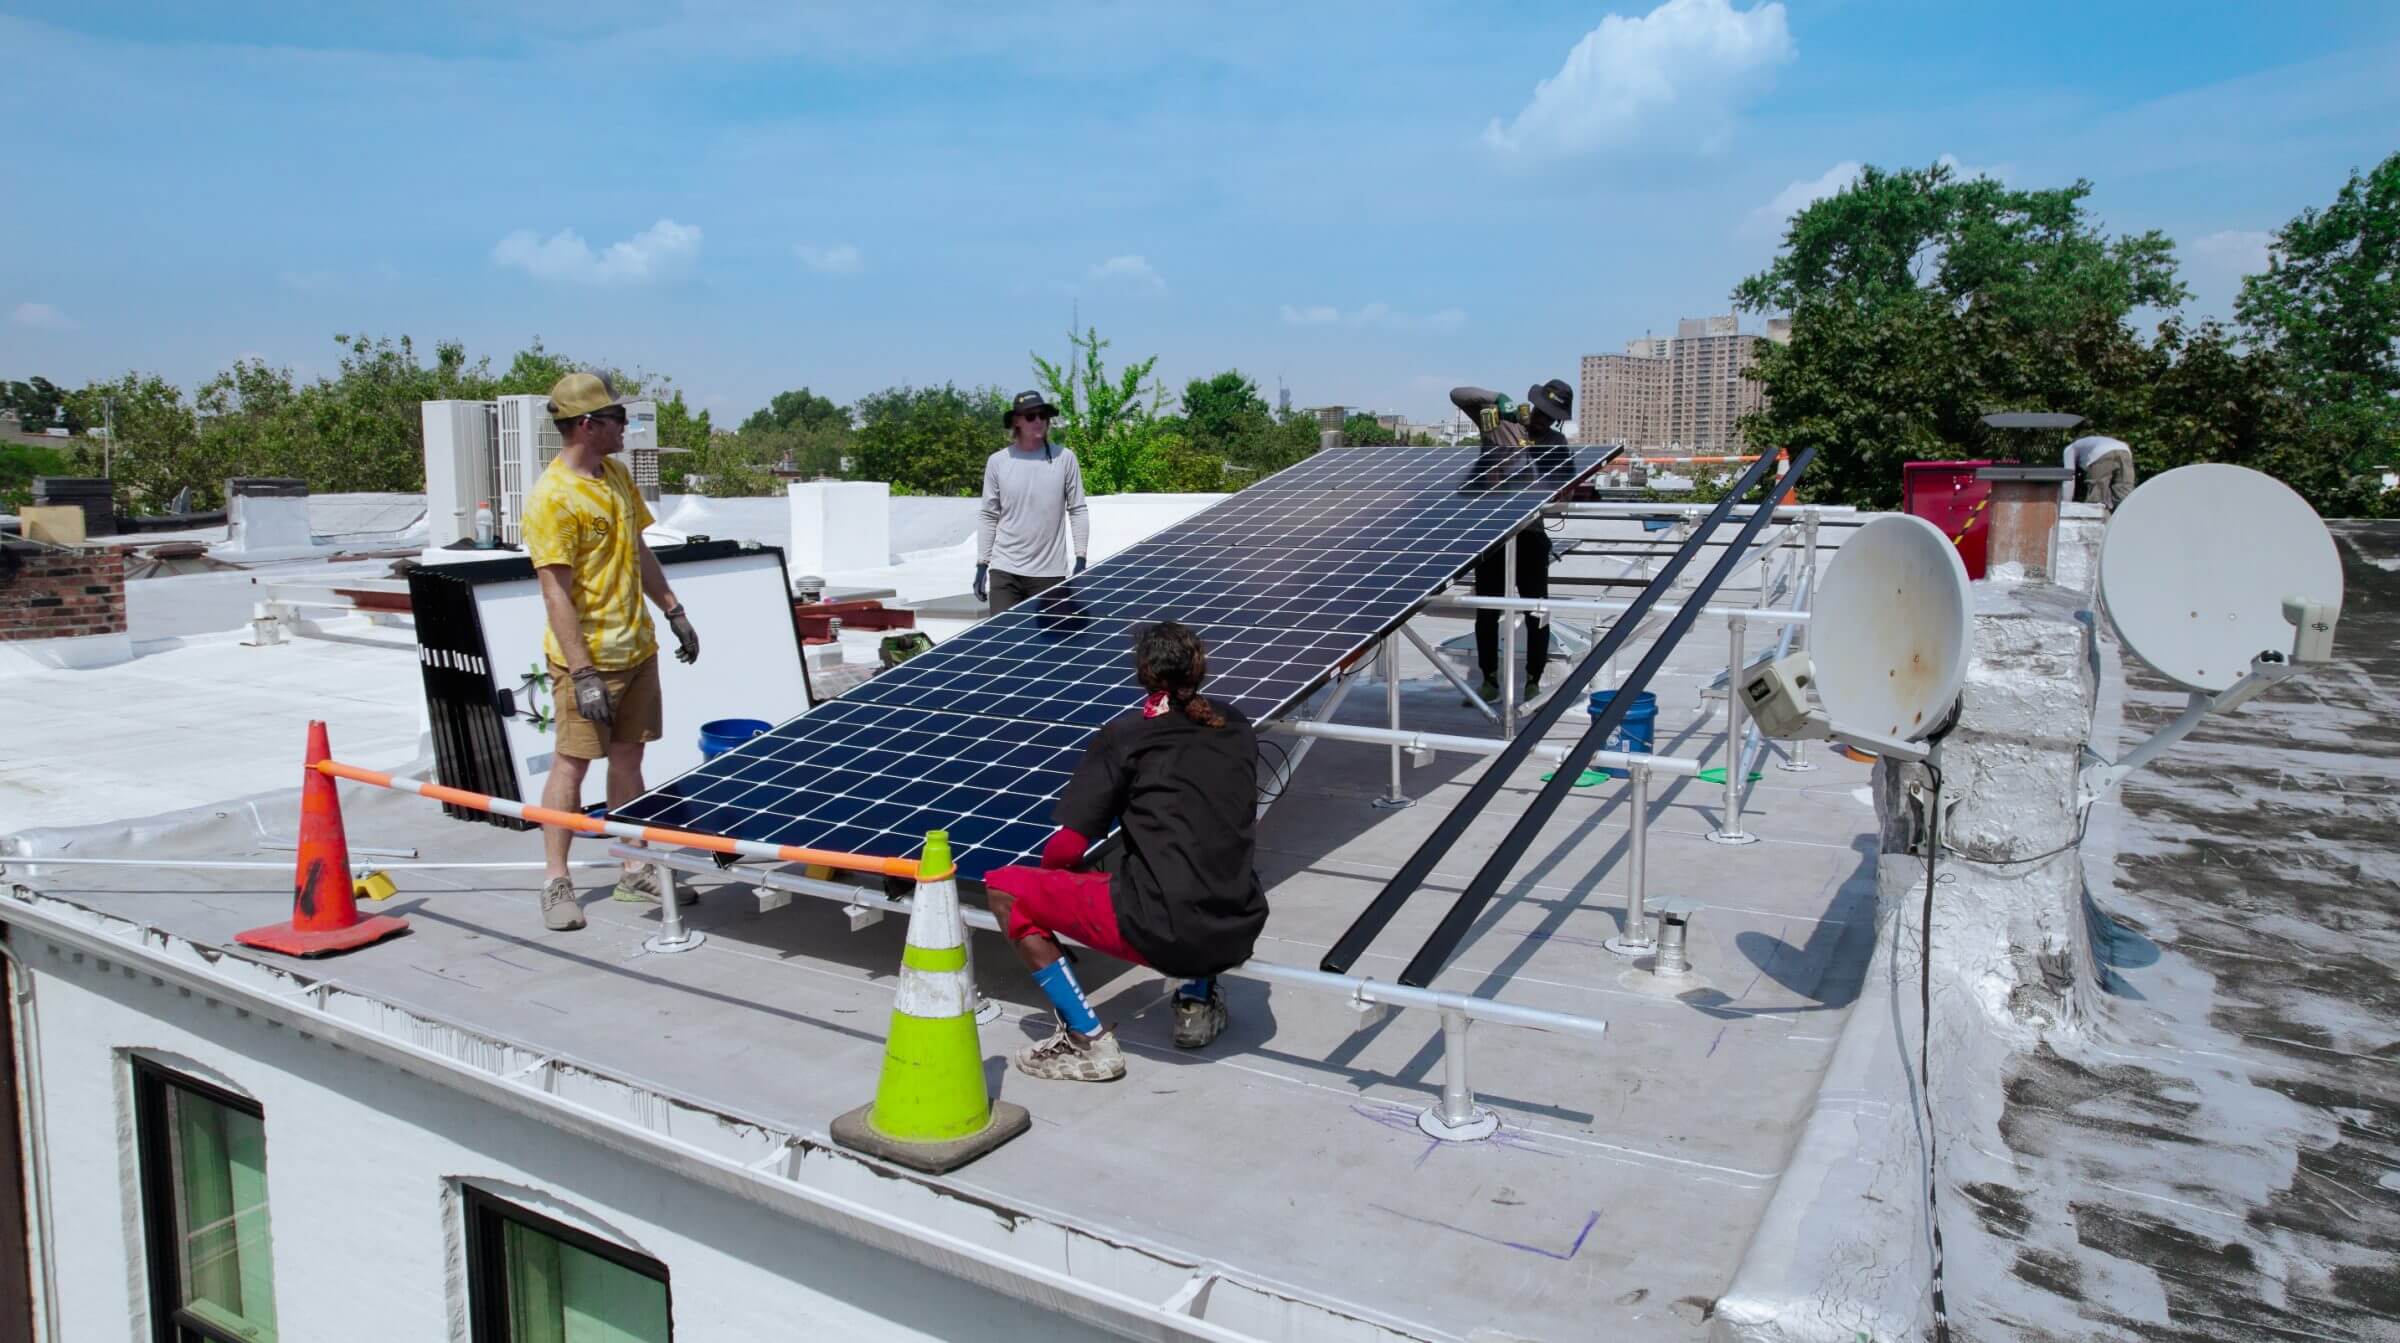 Brooklyn SolarWorks